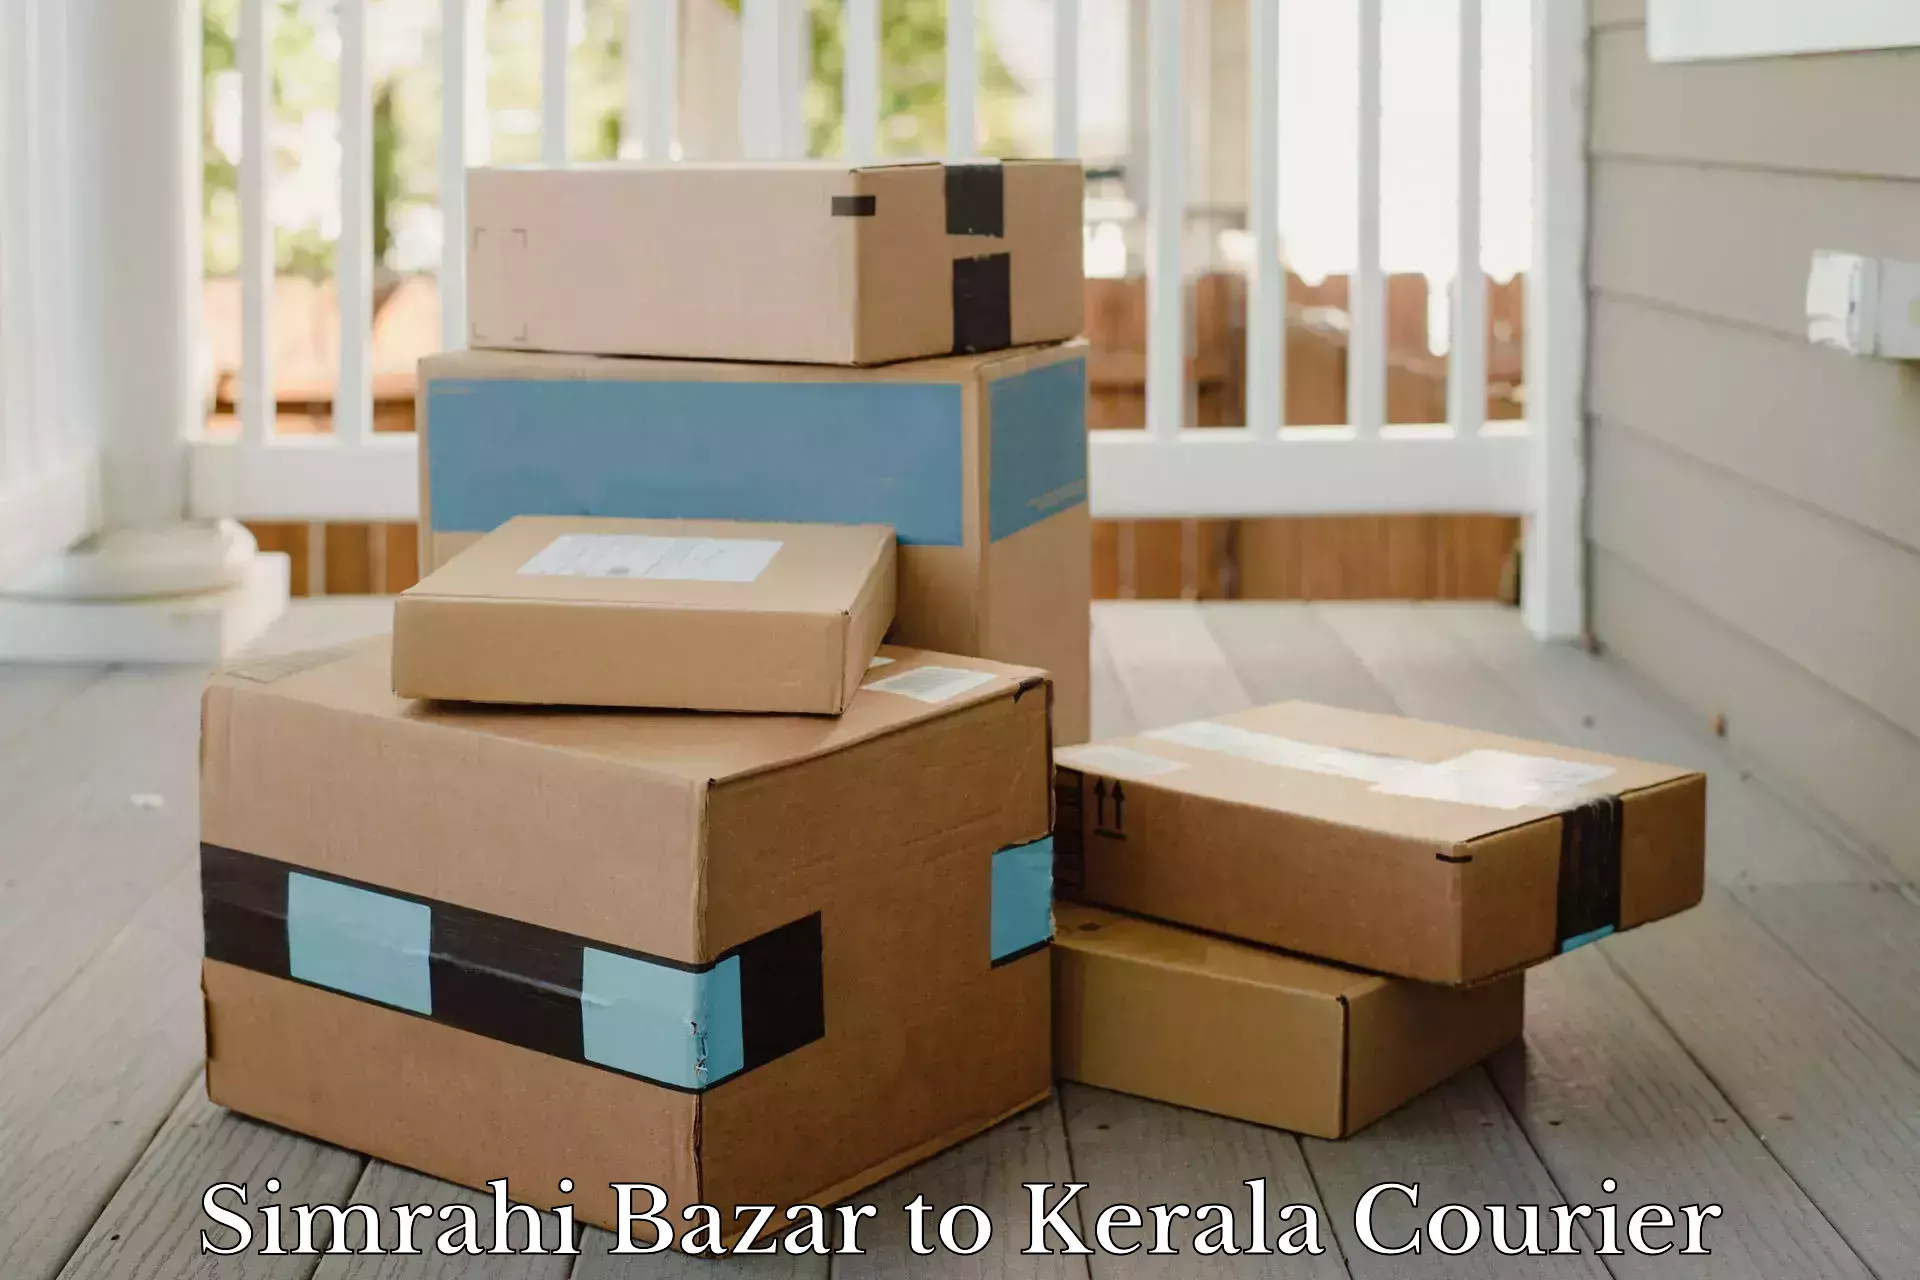 Quick dispatch service Simrahi Bazar to Kerala